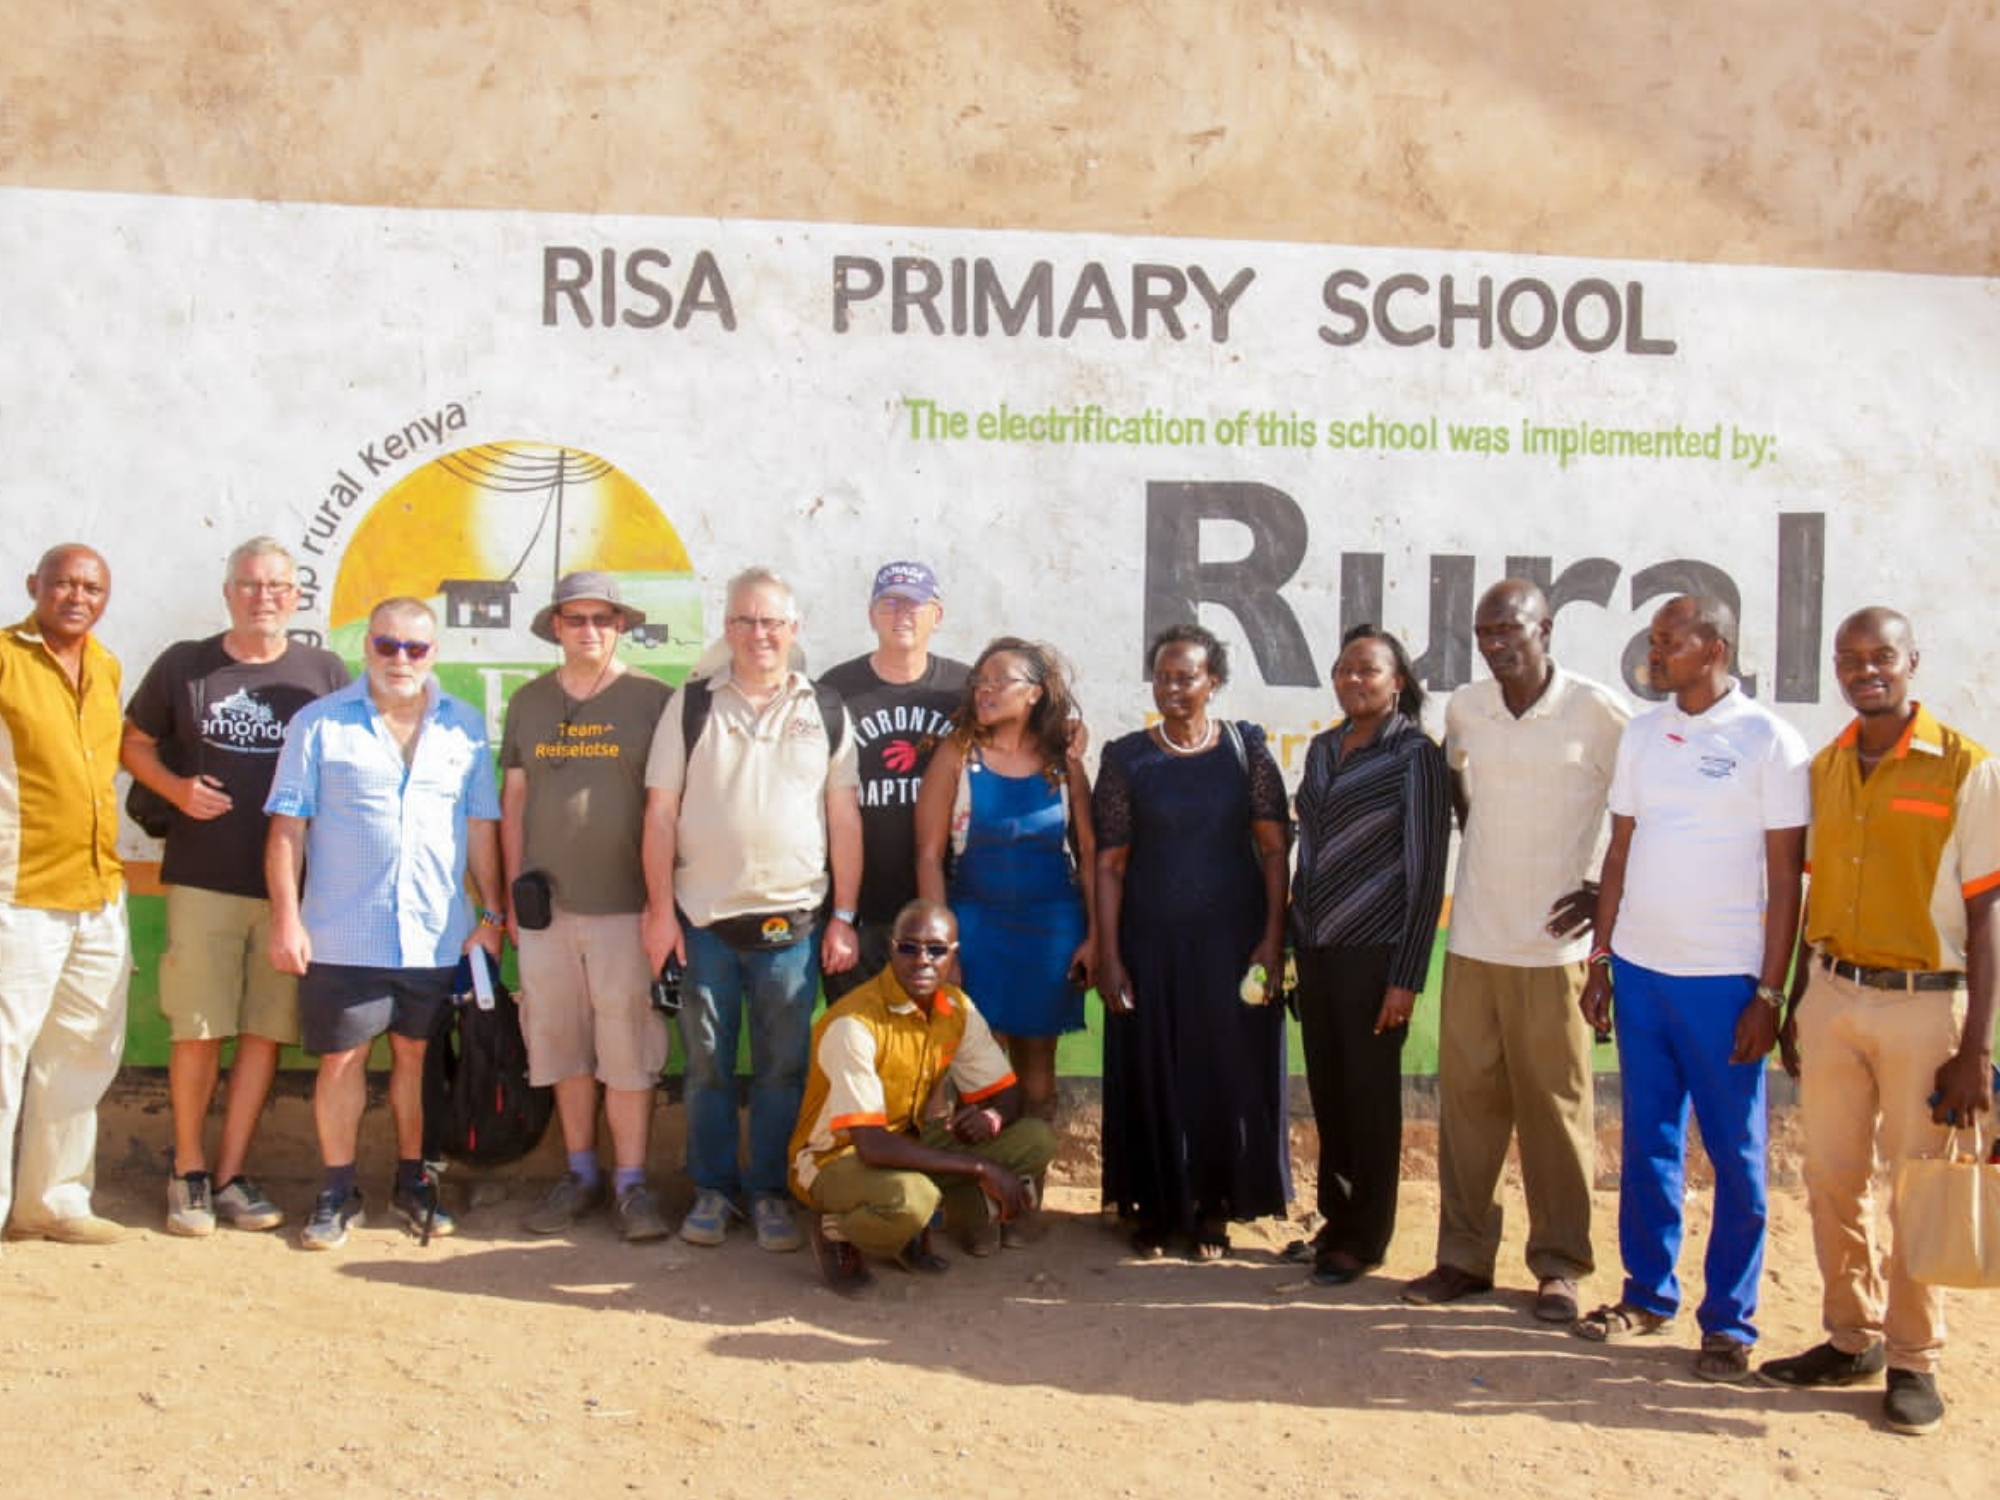 Gruppenfoto vor der Risa Primary School, Kenia